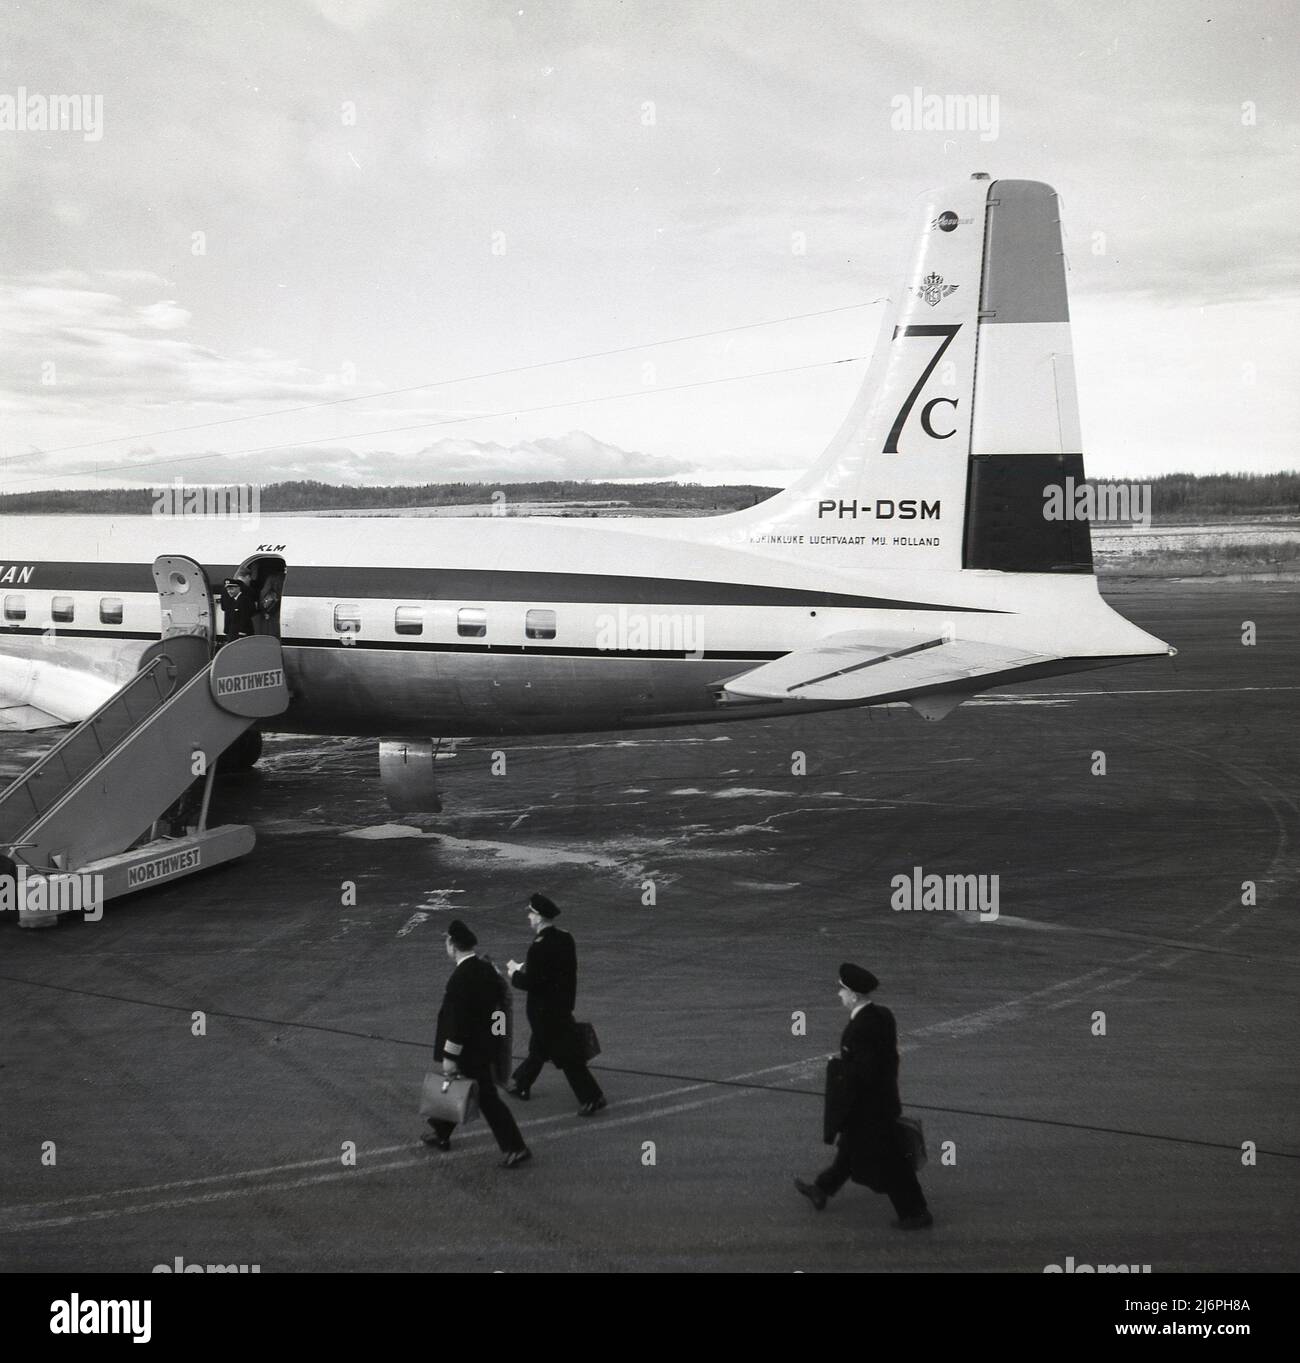 1950s, historisch, Piloten auf der Landebahn zu Fuß an Bord einer Douglas DC-7C. KLM-Flugzeug am Flughafen Anchorage, Alaska, USA. Die 1956 eingeführte DC-7C (Seven Seas) war eine erweiterte Variante des ursprünglichen DC-7-Flugzeugs mit verbesserten Motoren und zusätzlicher Kraftstoffkapazität. Diese Änderungen bedeuteten, dass es über eine ununterbrochende transatlantische Kapazität verfügte und zusätzlich europäische Fluggesellschaften anziehen sollte. Die Zahlen 7c können auf dem Reitflugzeug zu sehen. Stockfoto